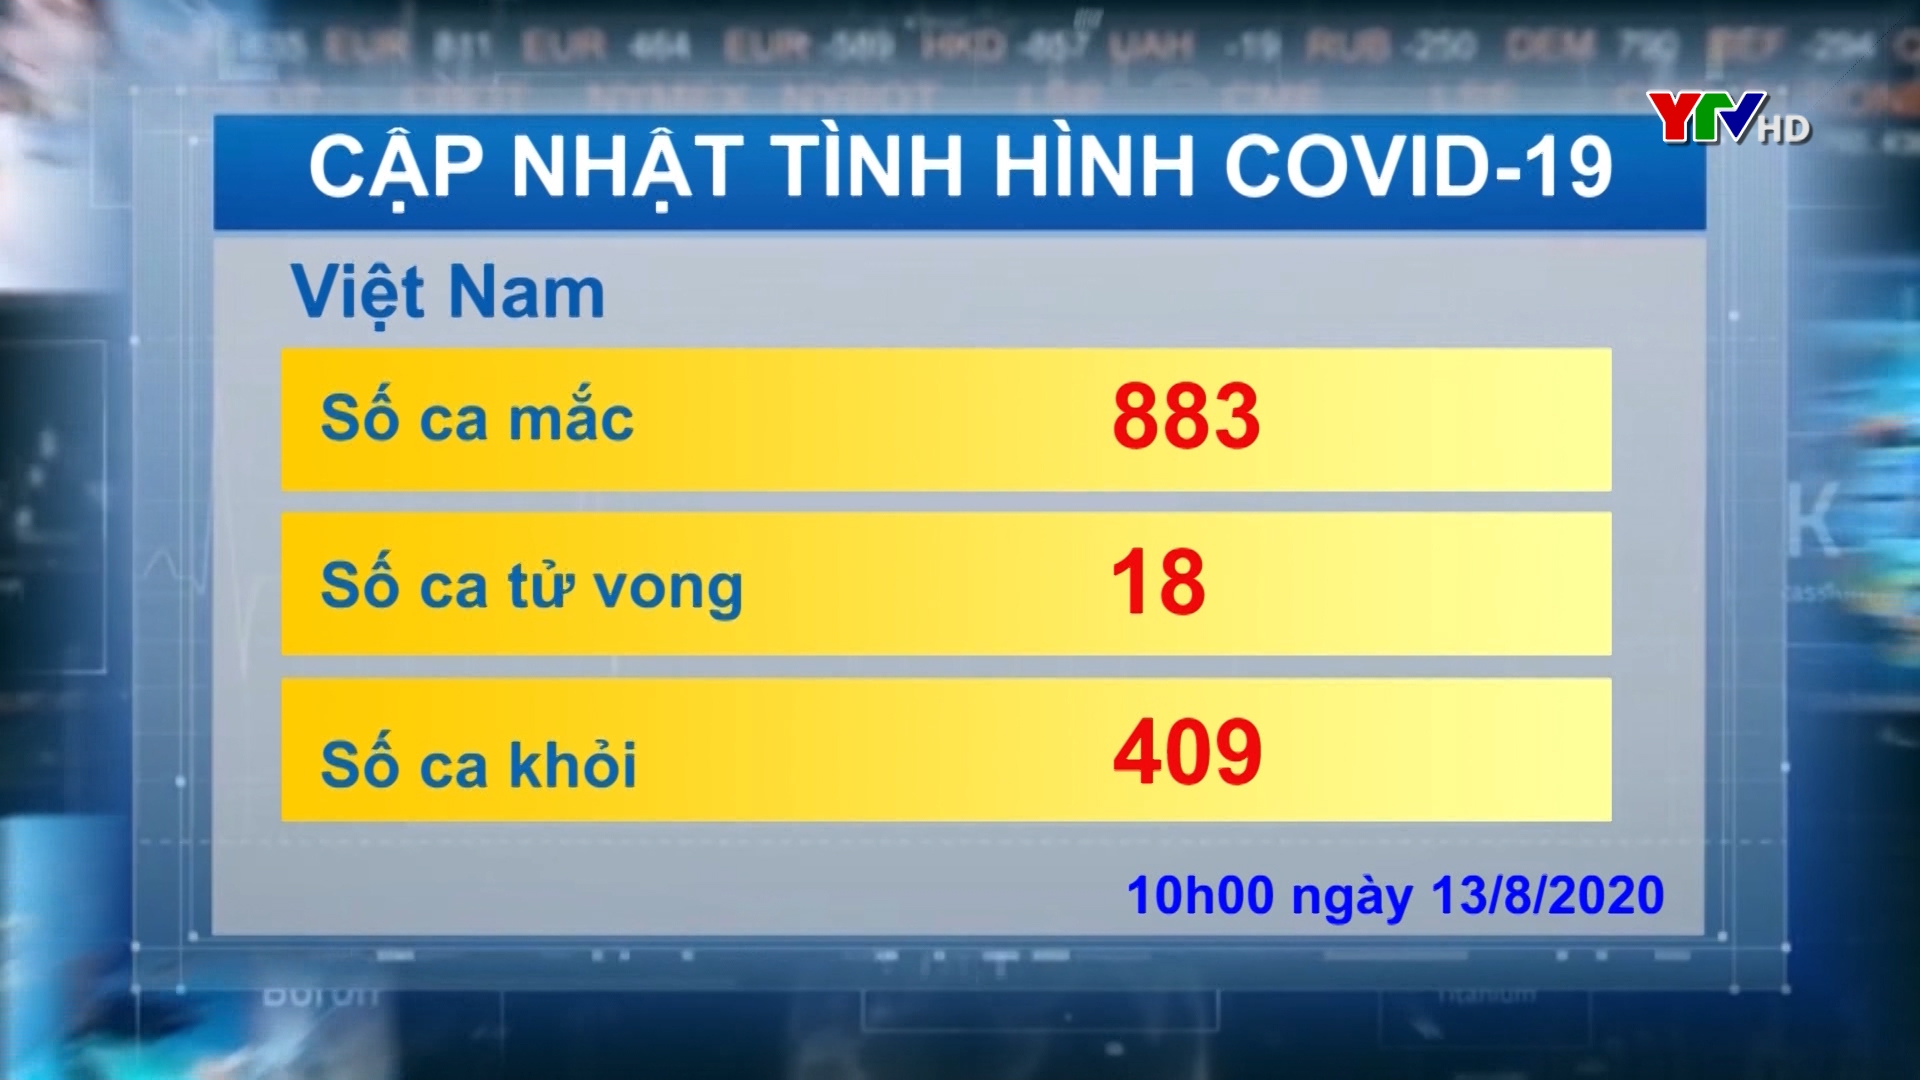 Việt Nam ghi nhận thêm 3 nhiễm COVID – 19 mới và thêm 1 ca tử vong trong sáng nay